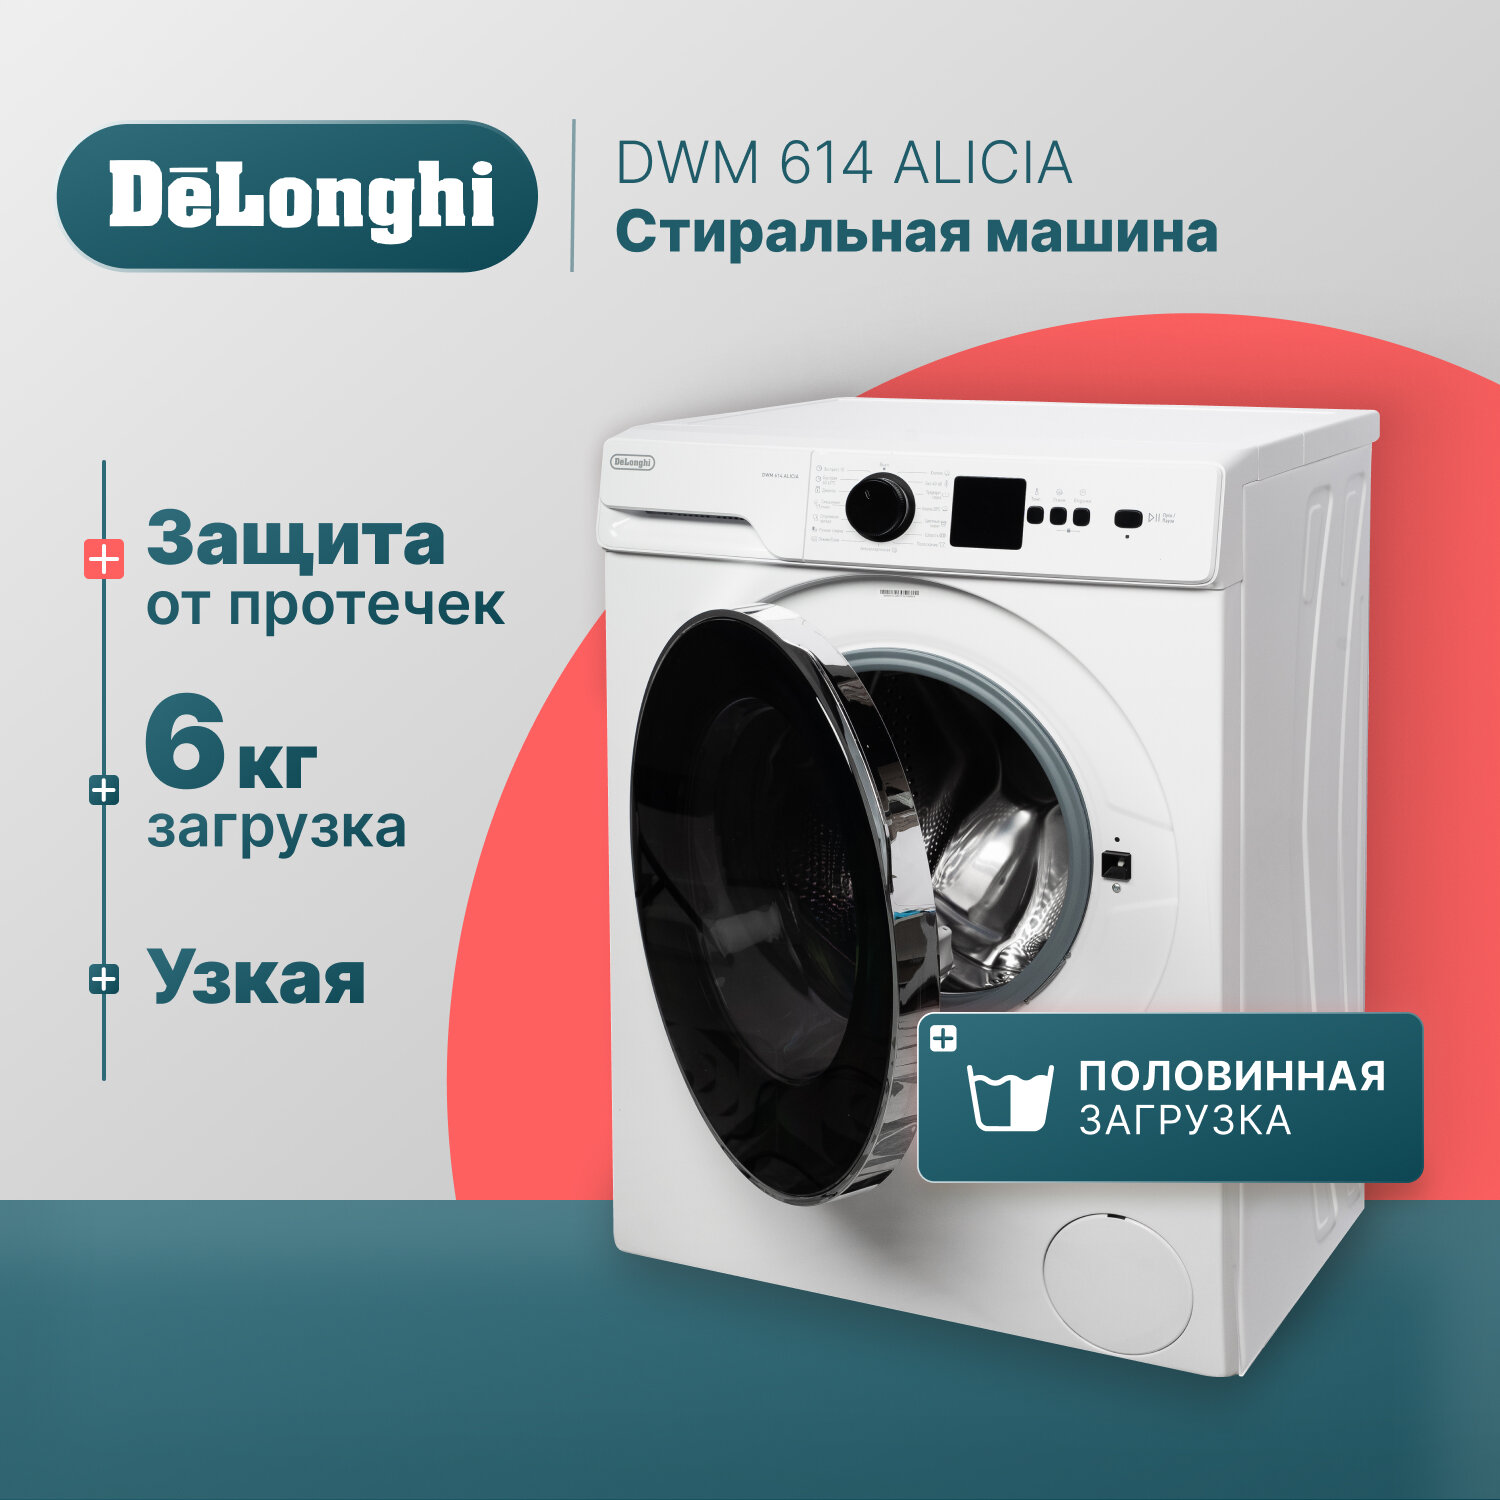 Стиральная машина DeLonghi DWM 614 ALICIA 42 см 6 кг отсрочка старта 15 программ половинная загрузка Eco-Logic